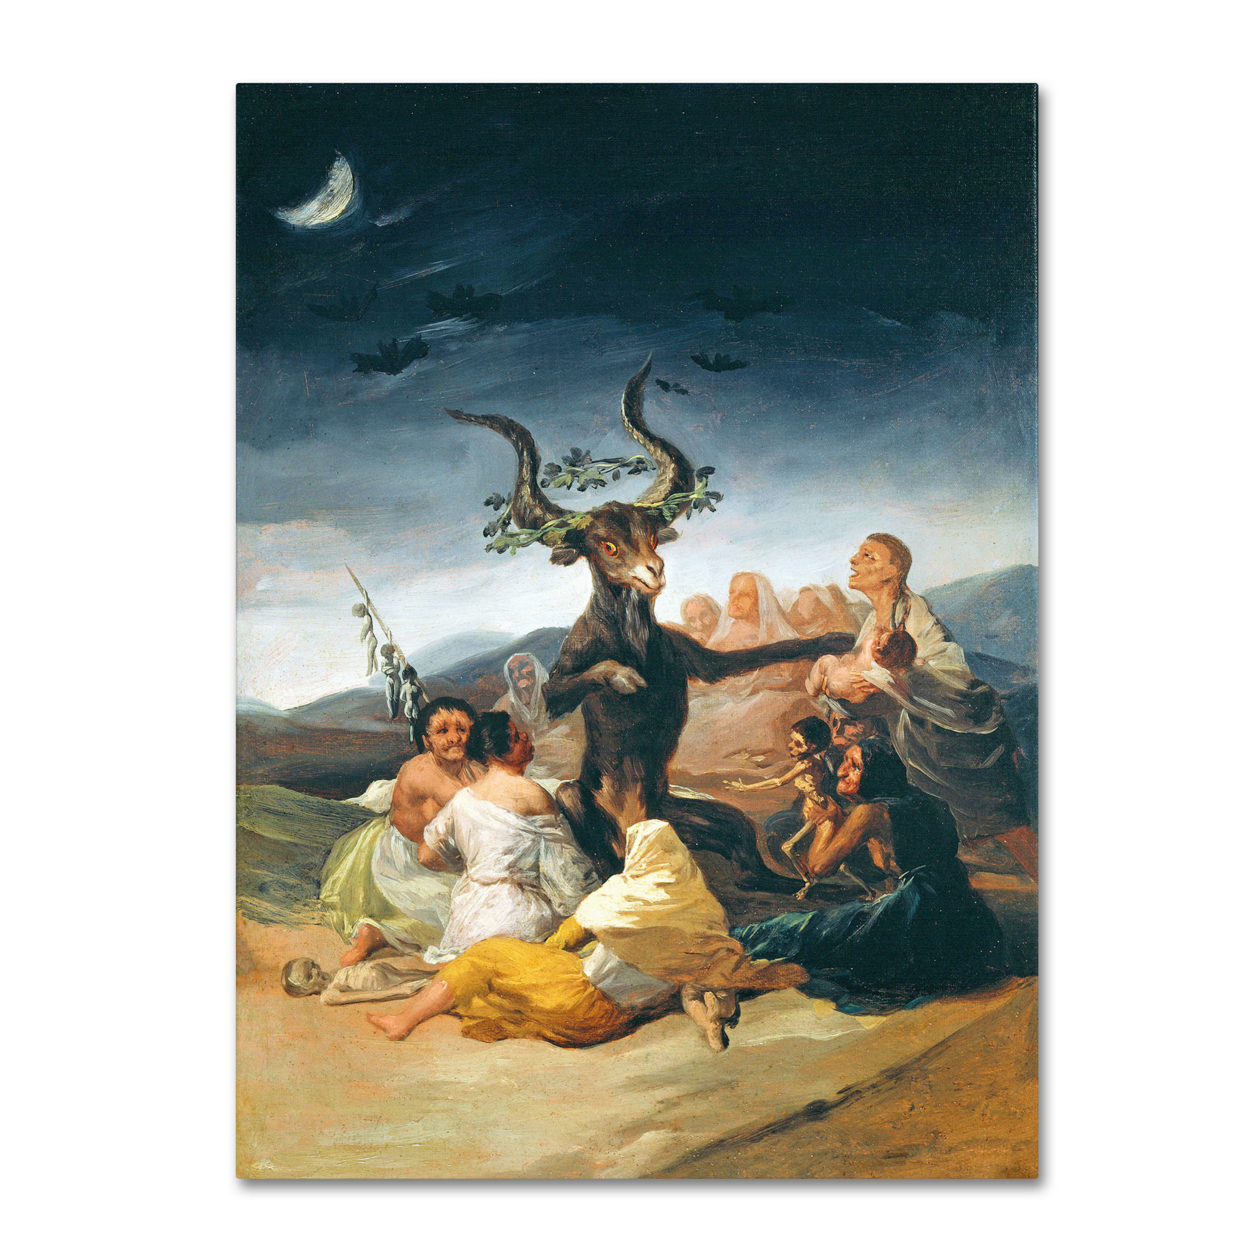 Francisco Goya 'The Witches' Sabbath 1797-98' Canvas Art 18 X 24